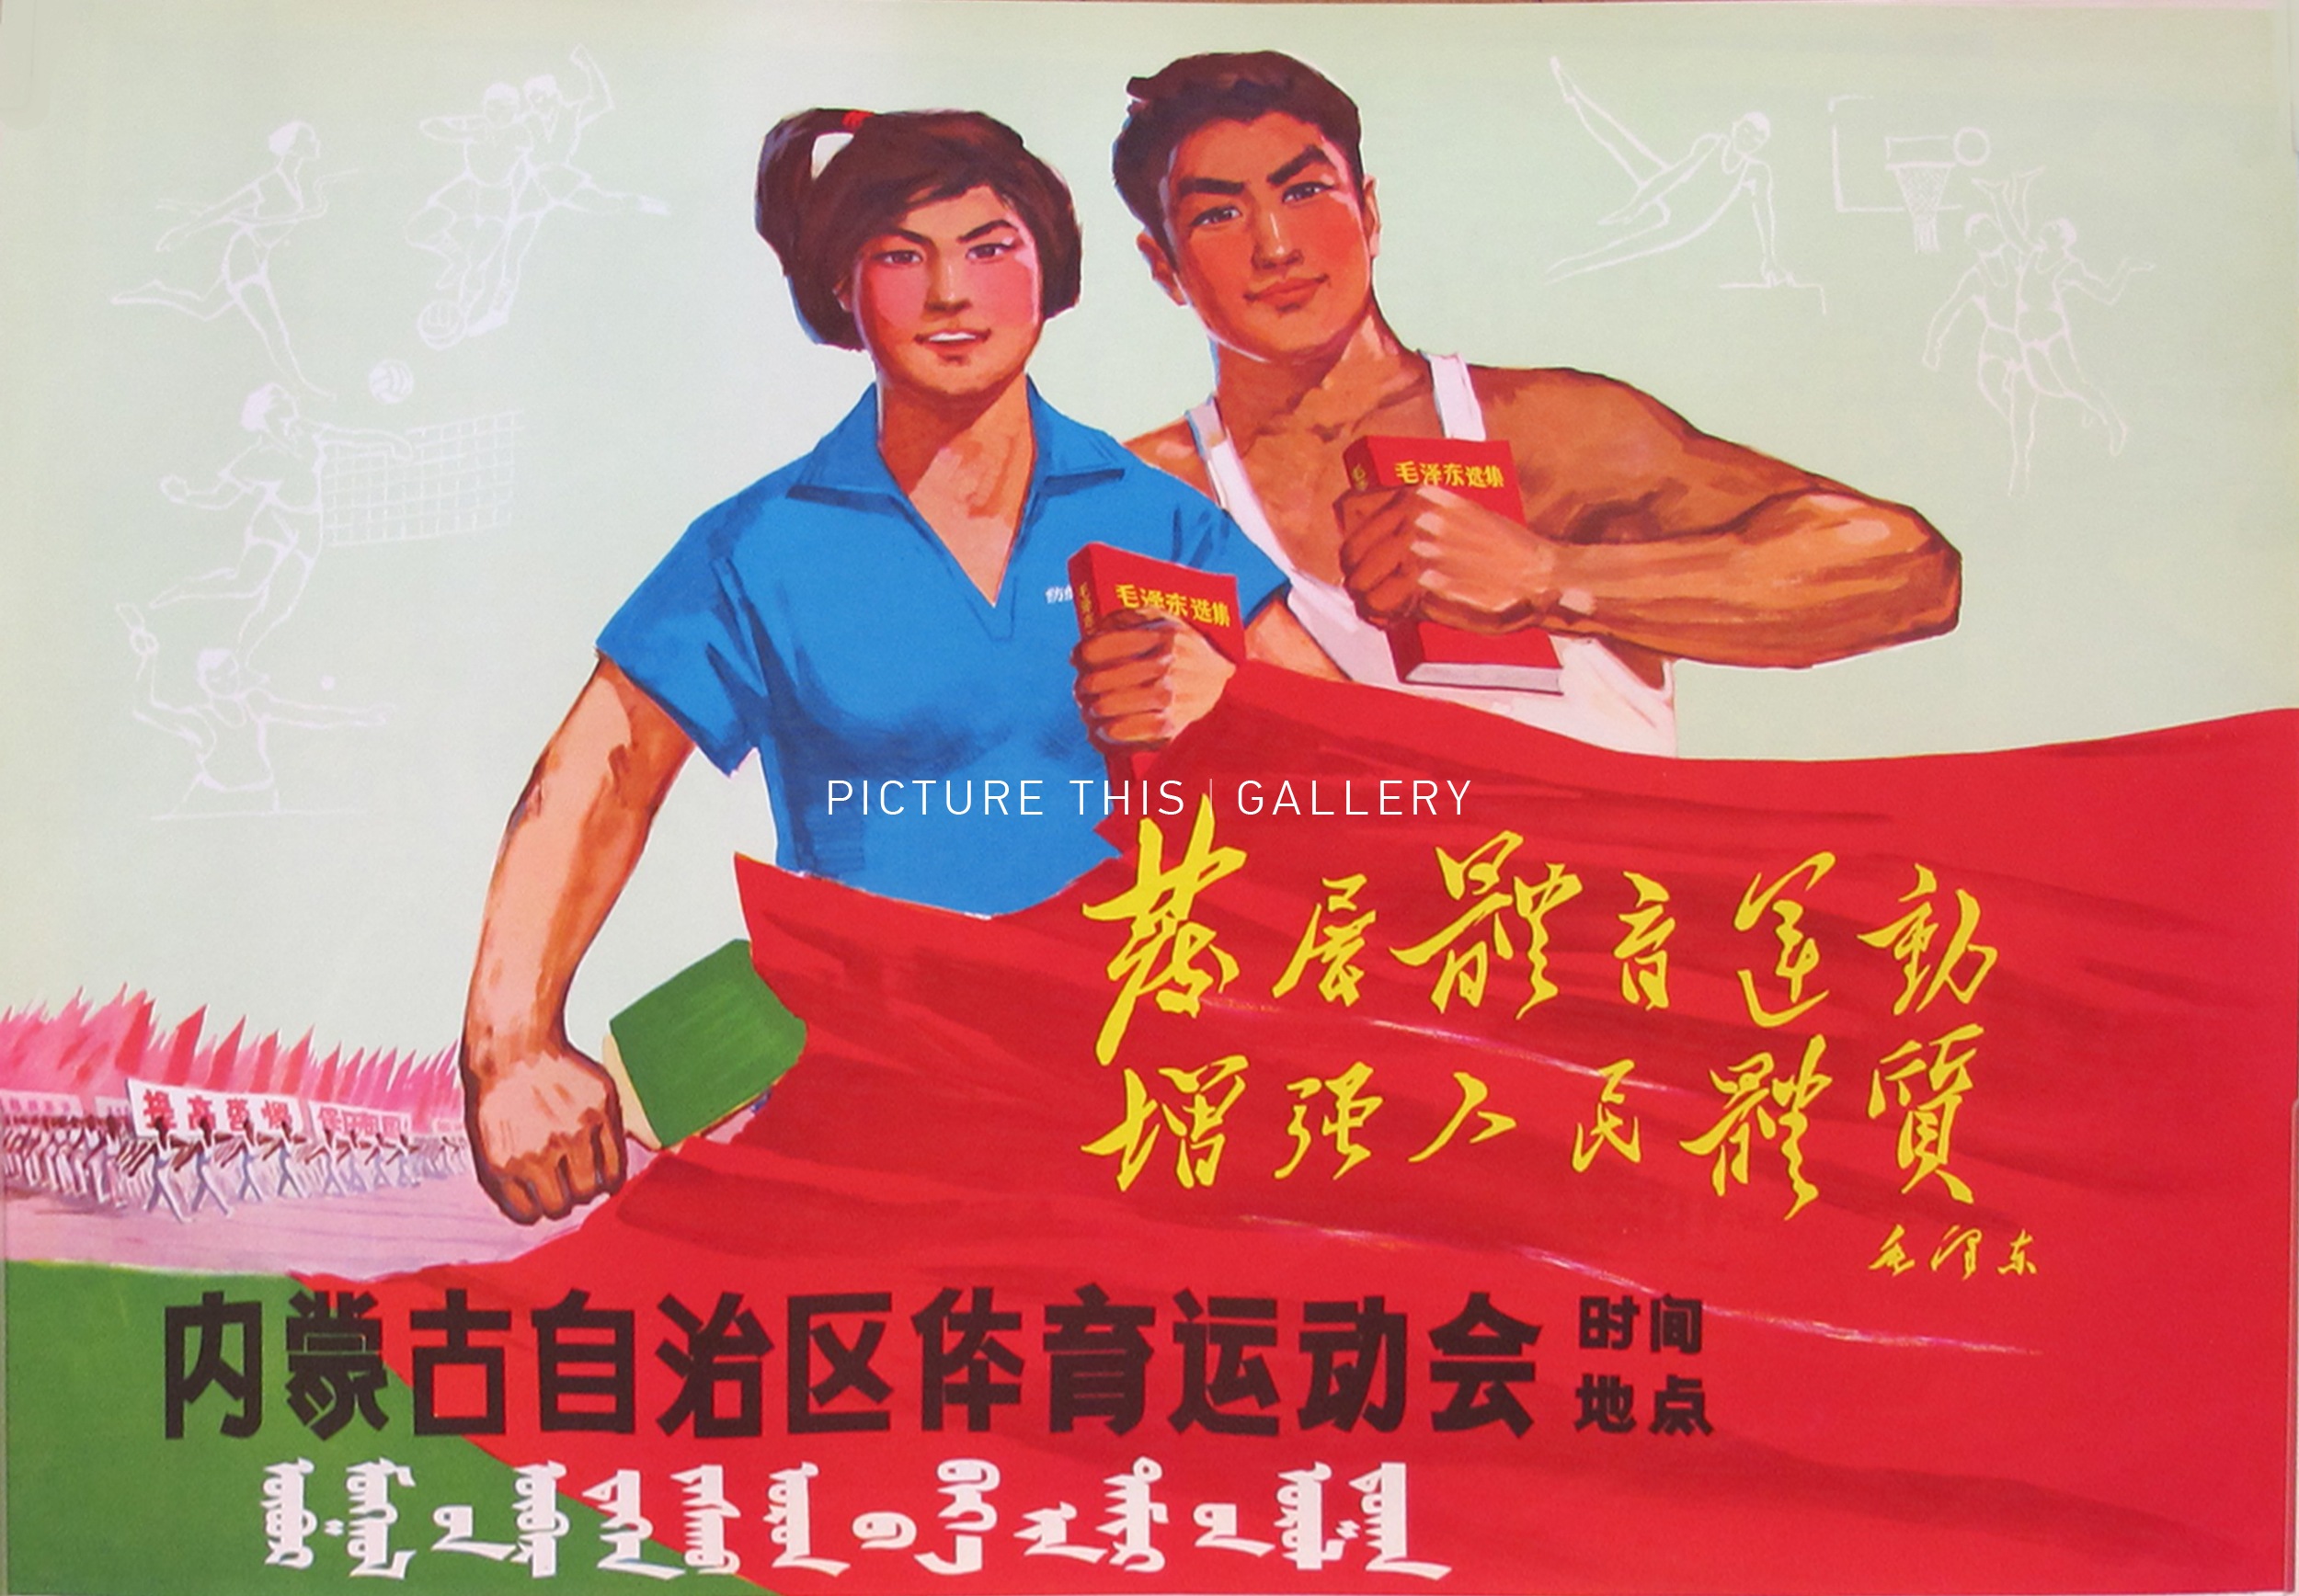 Слоган азии. Китайские плакаты времен Мао Цзэдуна. Китайский агитационный плакат эпохи Мао Цзэдуна. Азия для азиатов лозунг. Футболка с Мао Цзэдуном.